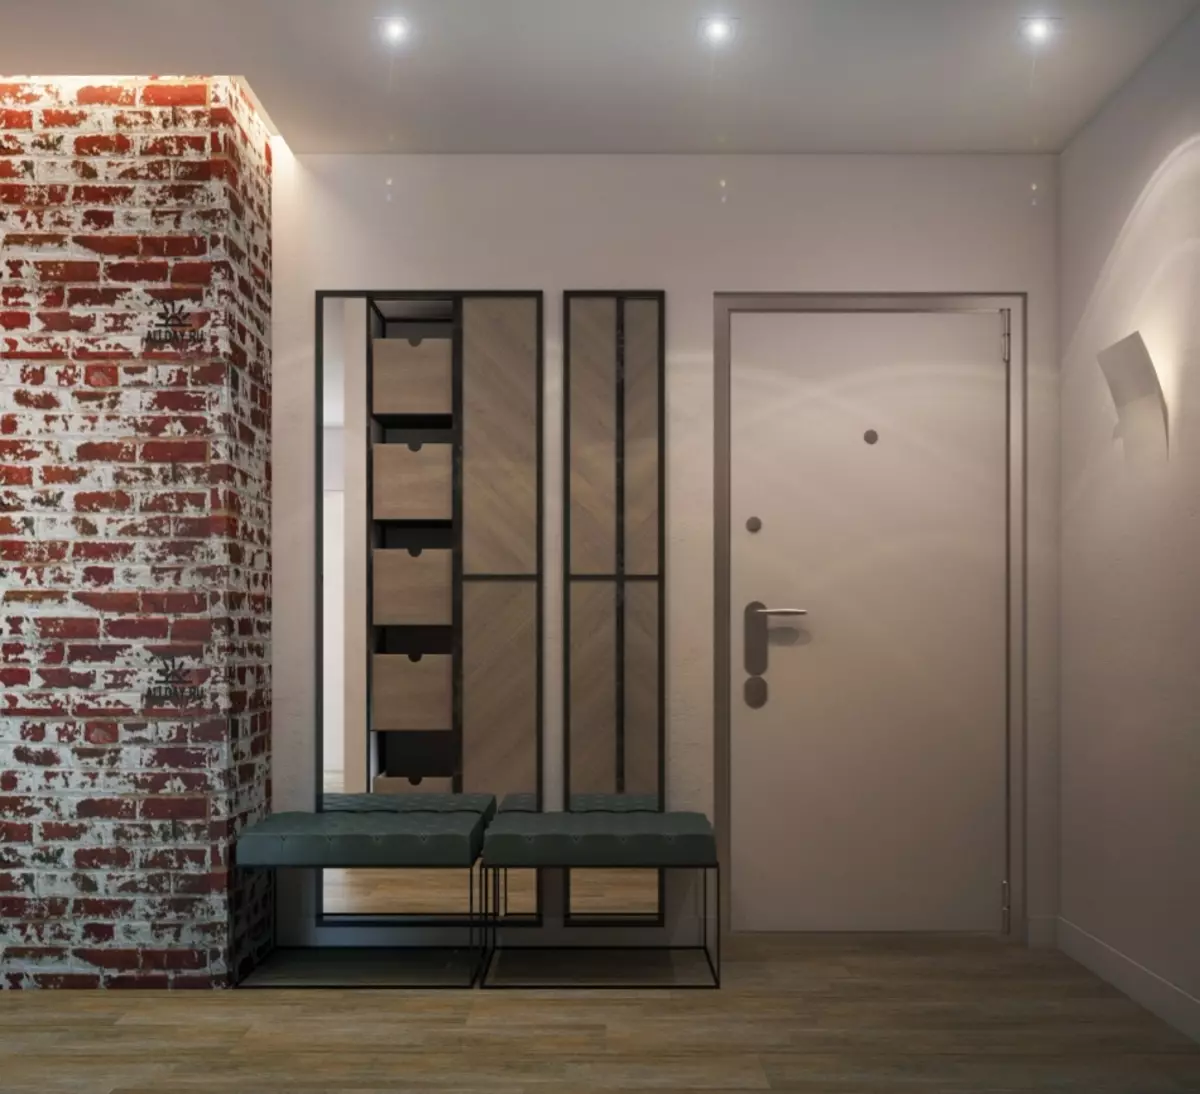 Hall de entrada em estilo loft (76 fotos): cabide e móveis no interior de um pequeno corredor, um design corredor com uma parede de tijolos, escolher um banco e roupeiros 9088_7